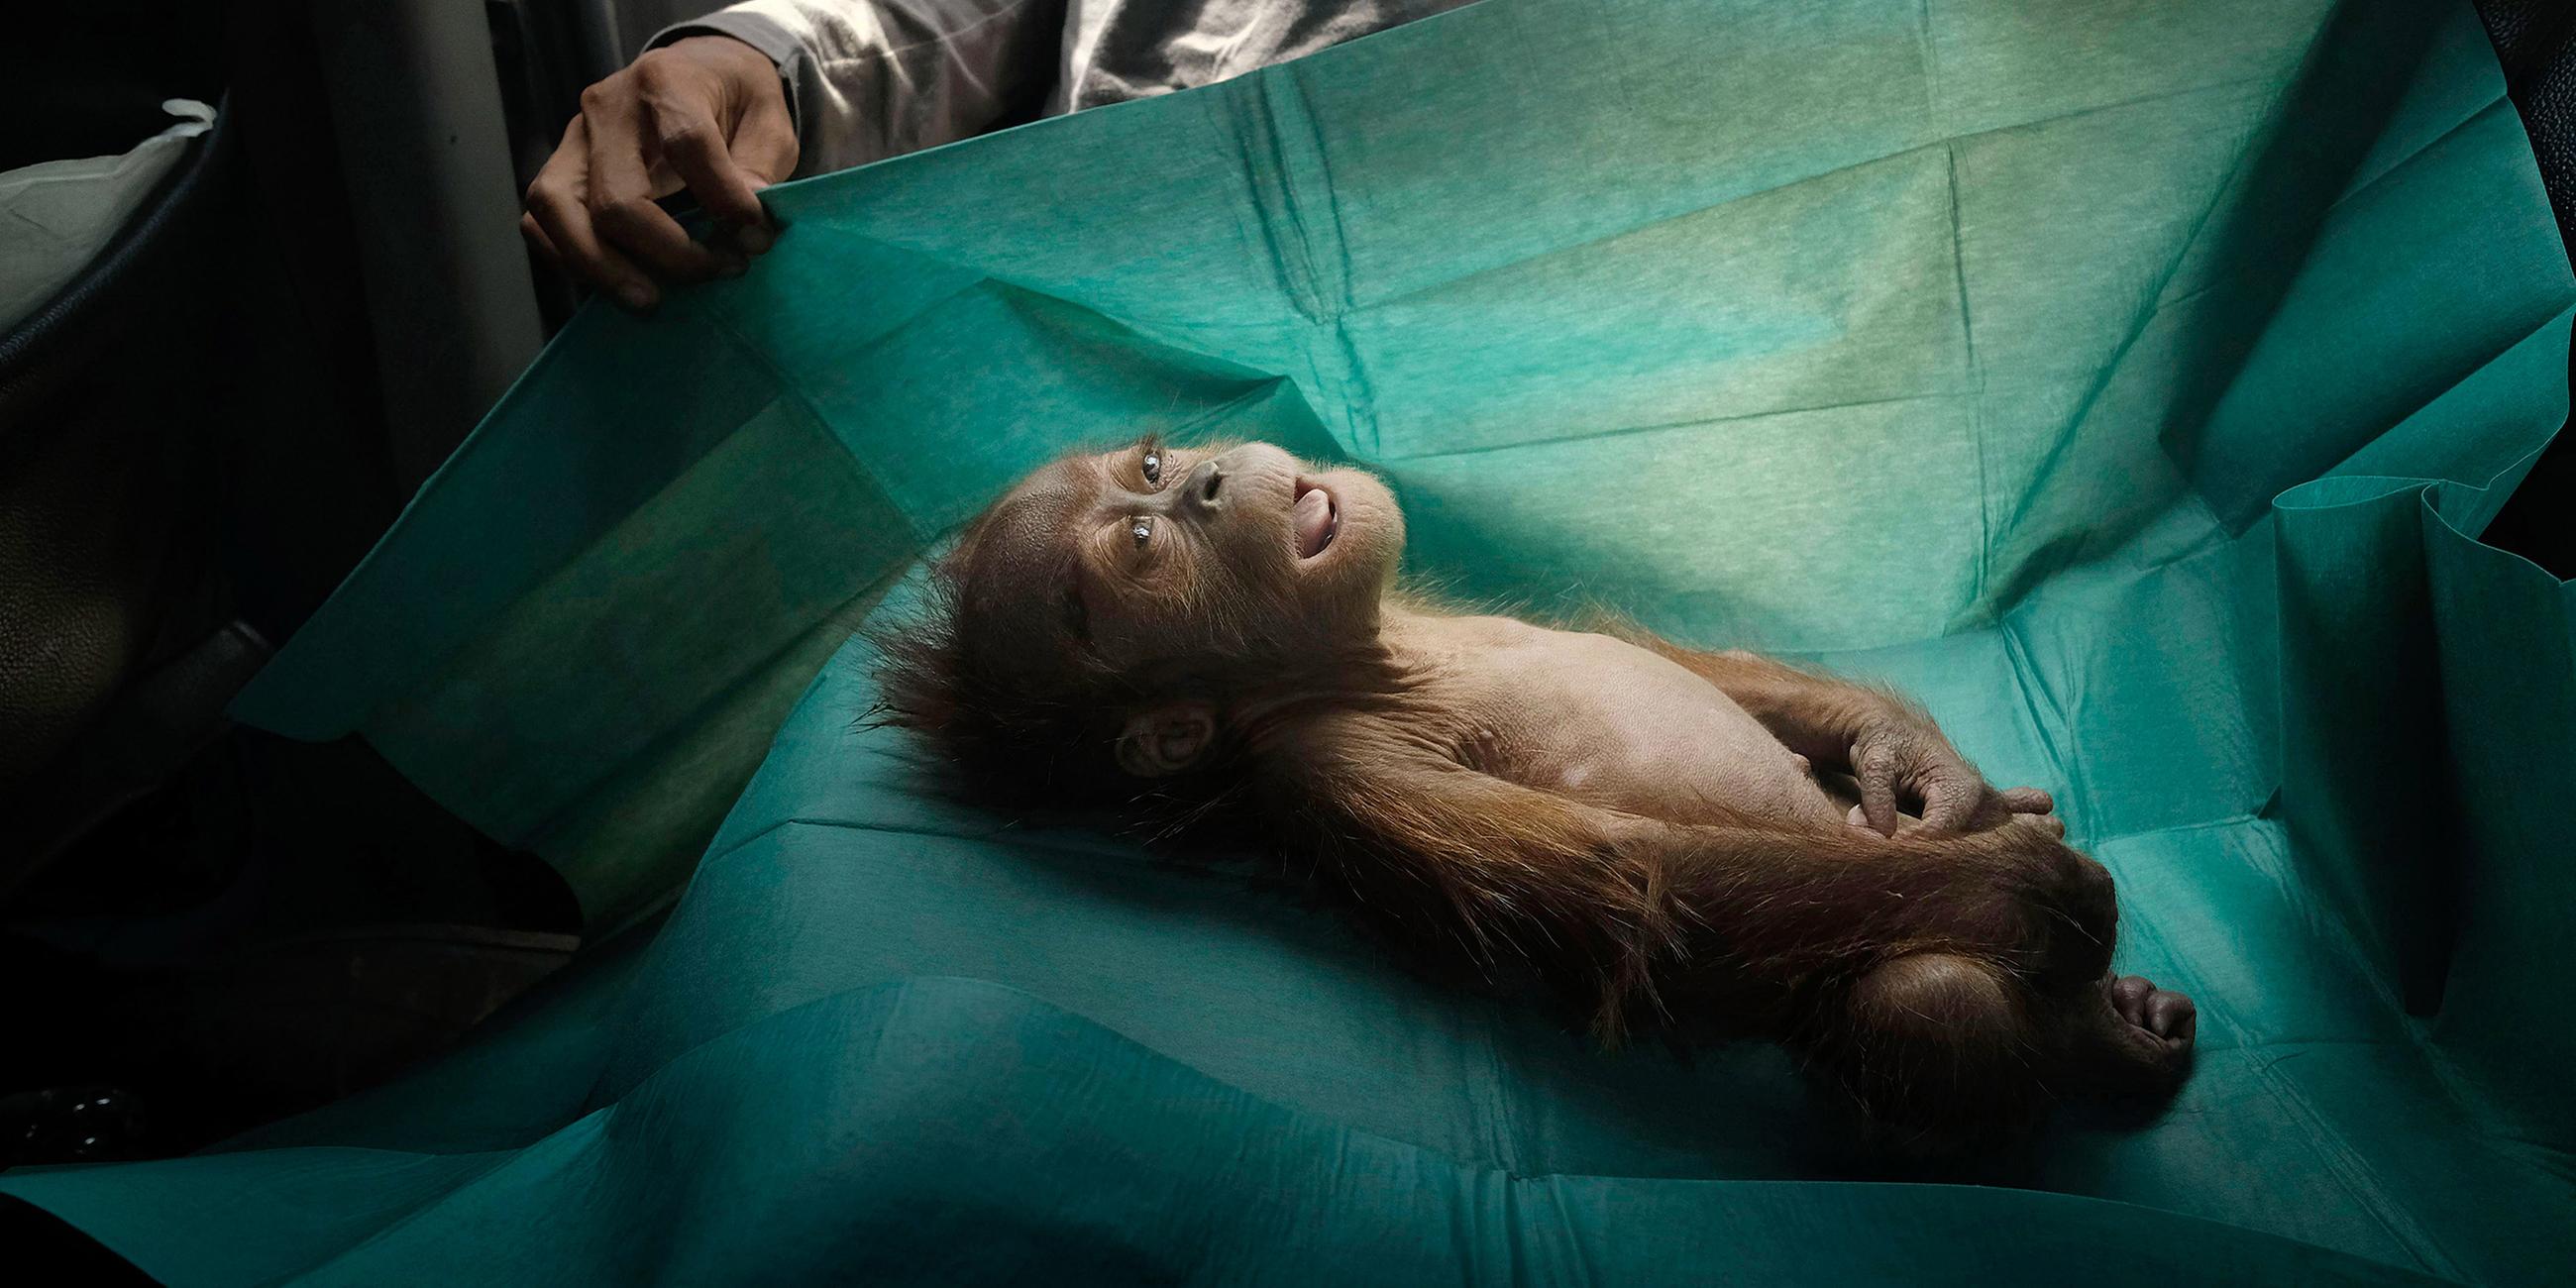 Indonesien, Subulussalam: Der Körper eines einmonatigen Orang-Utans liegt auf dem Operationstuch eines Rettungsteams auf Sumatra.